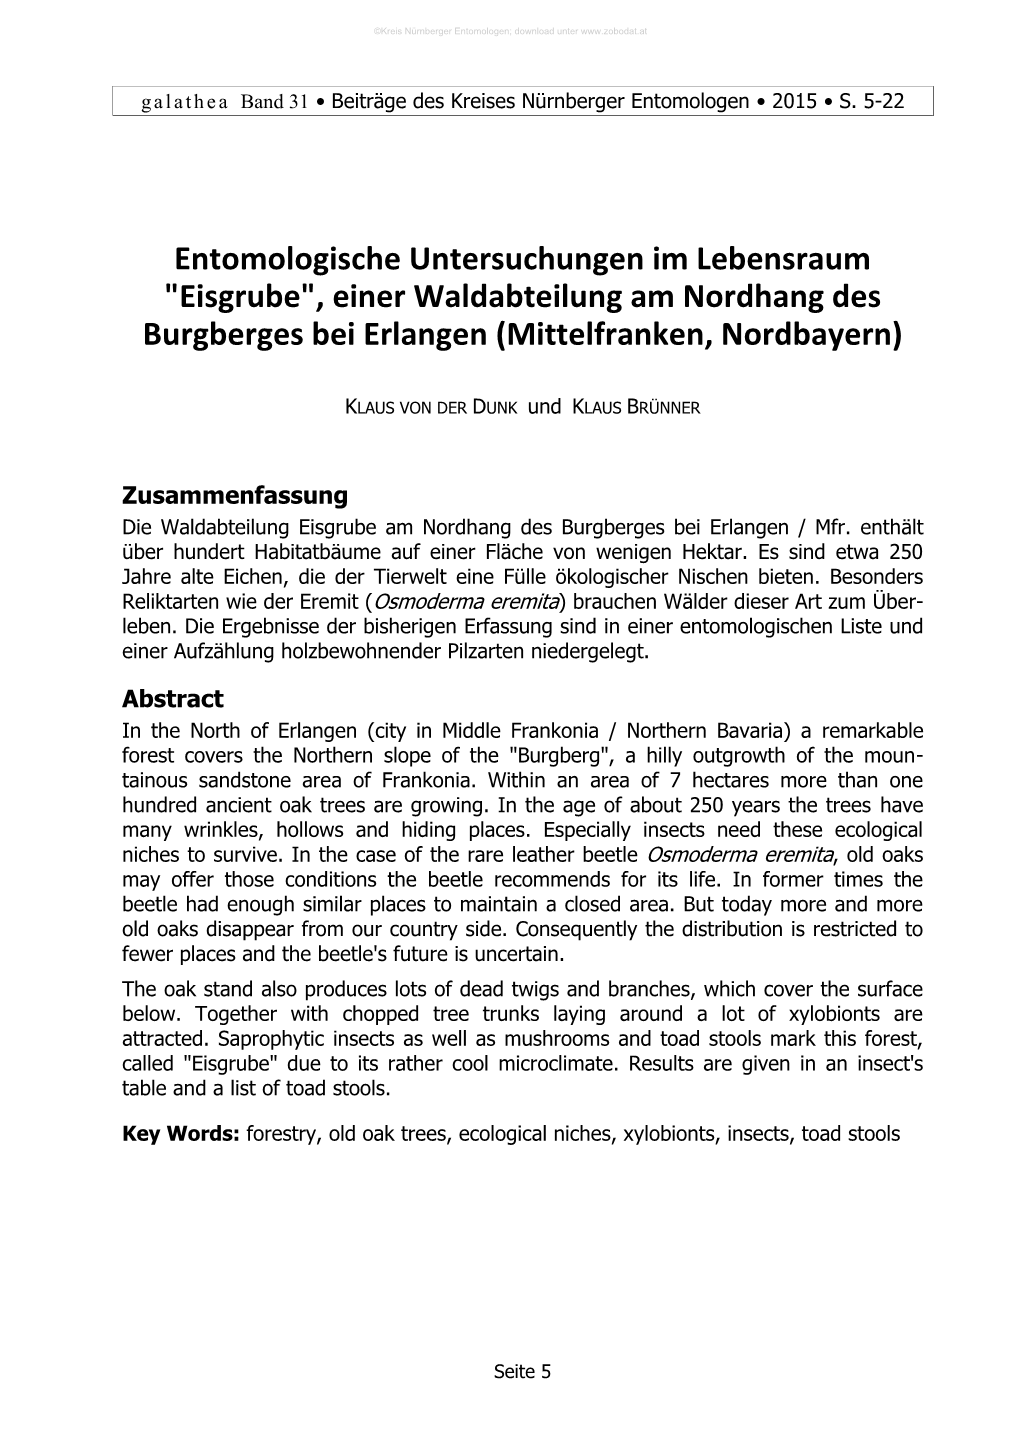 Entomologische Untersuchungen Im Lebensraum "Eisgrube", Einer Waldabteilung Am Nordhang Des Burgberges Bei Erlangen (Mittelfranken, Nordbayern)